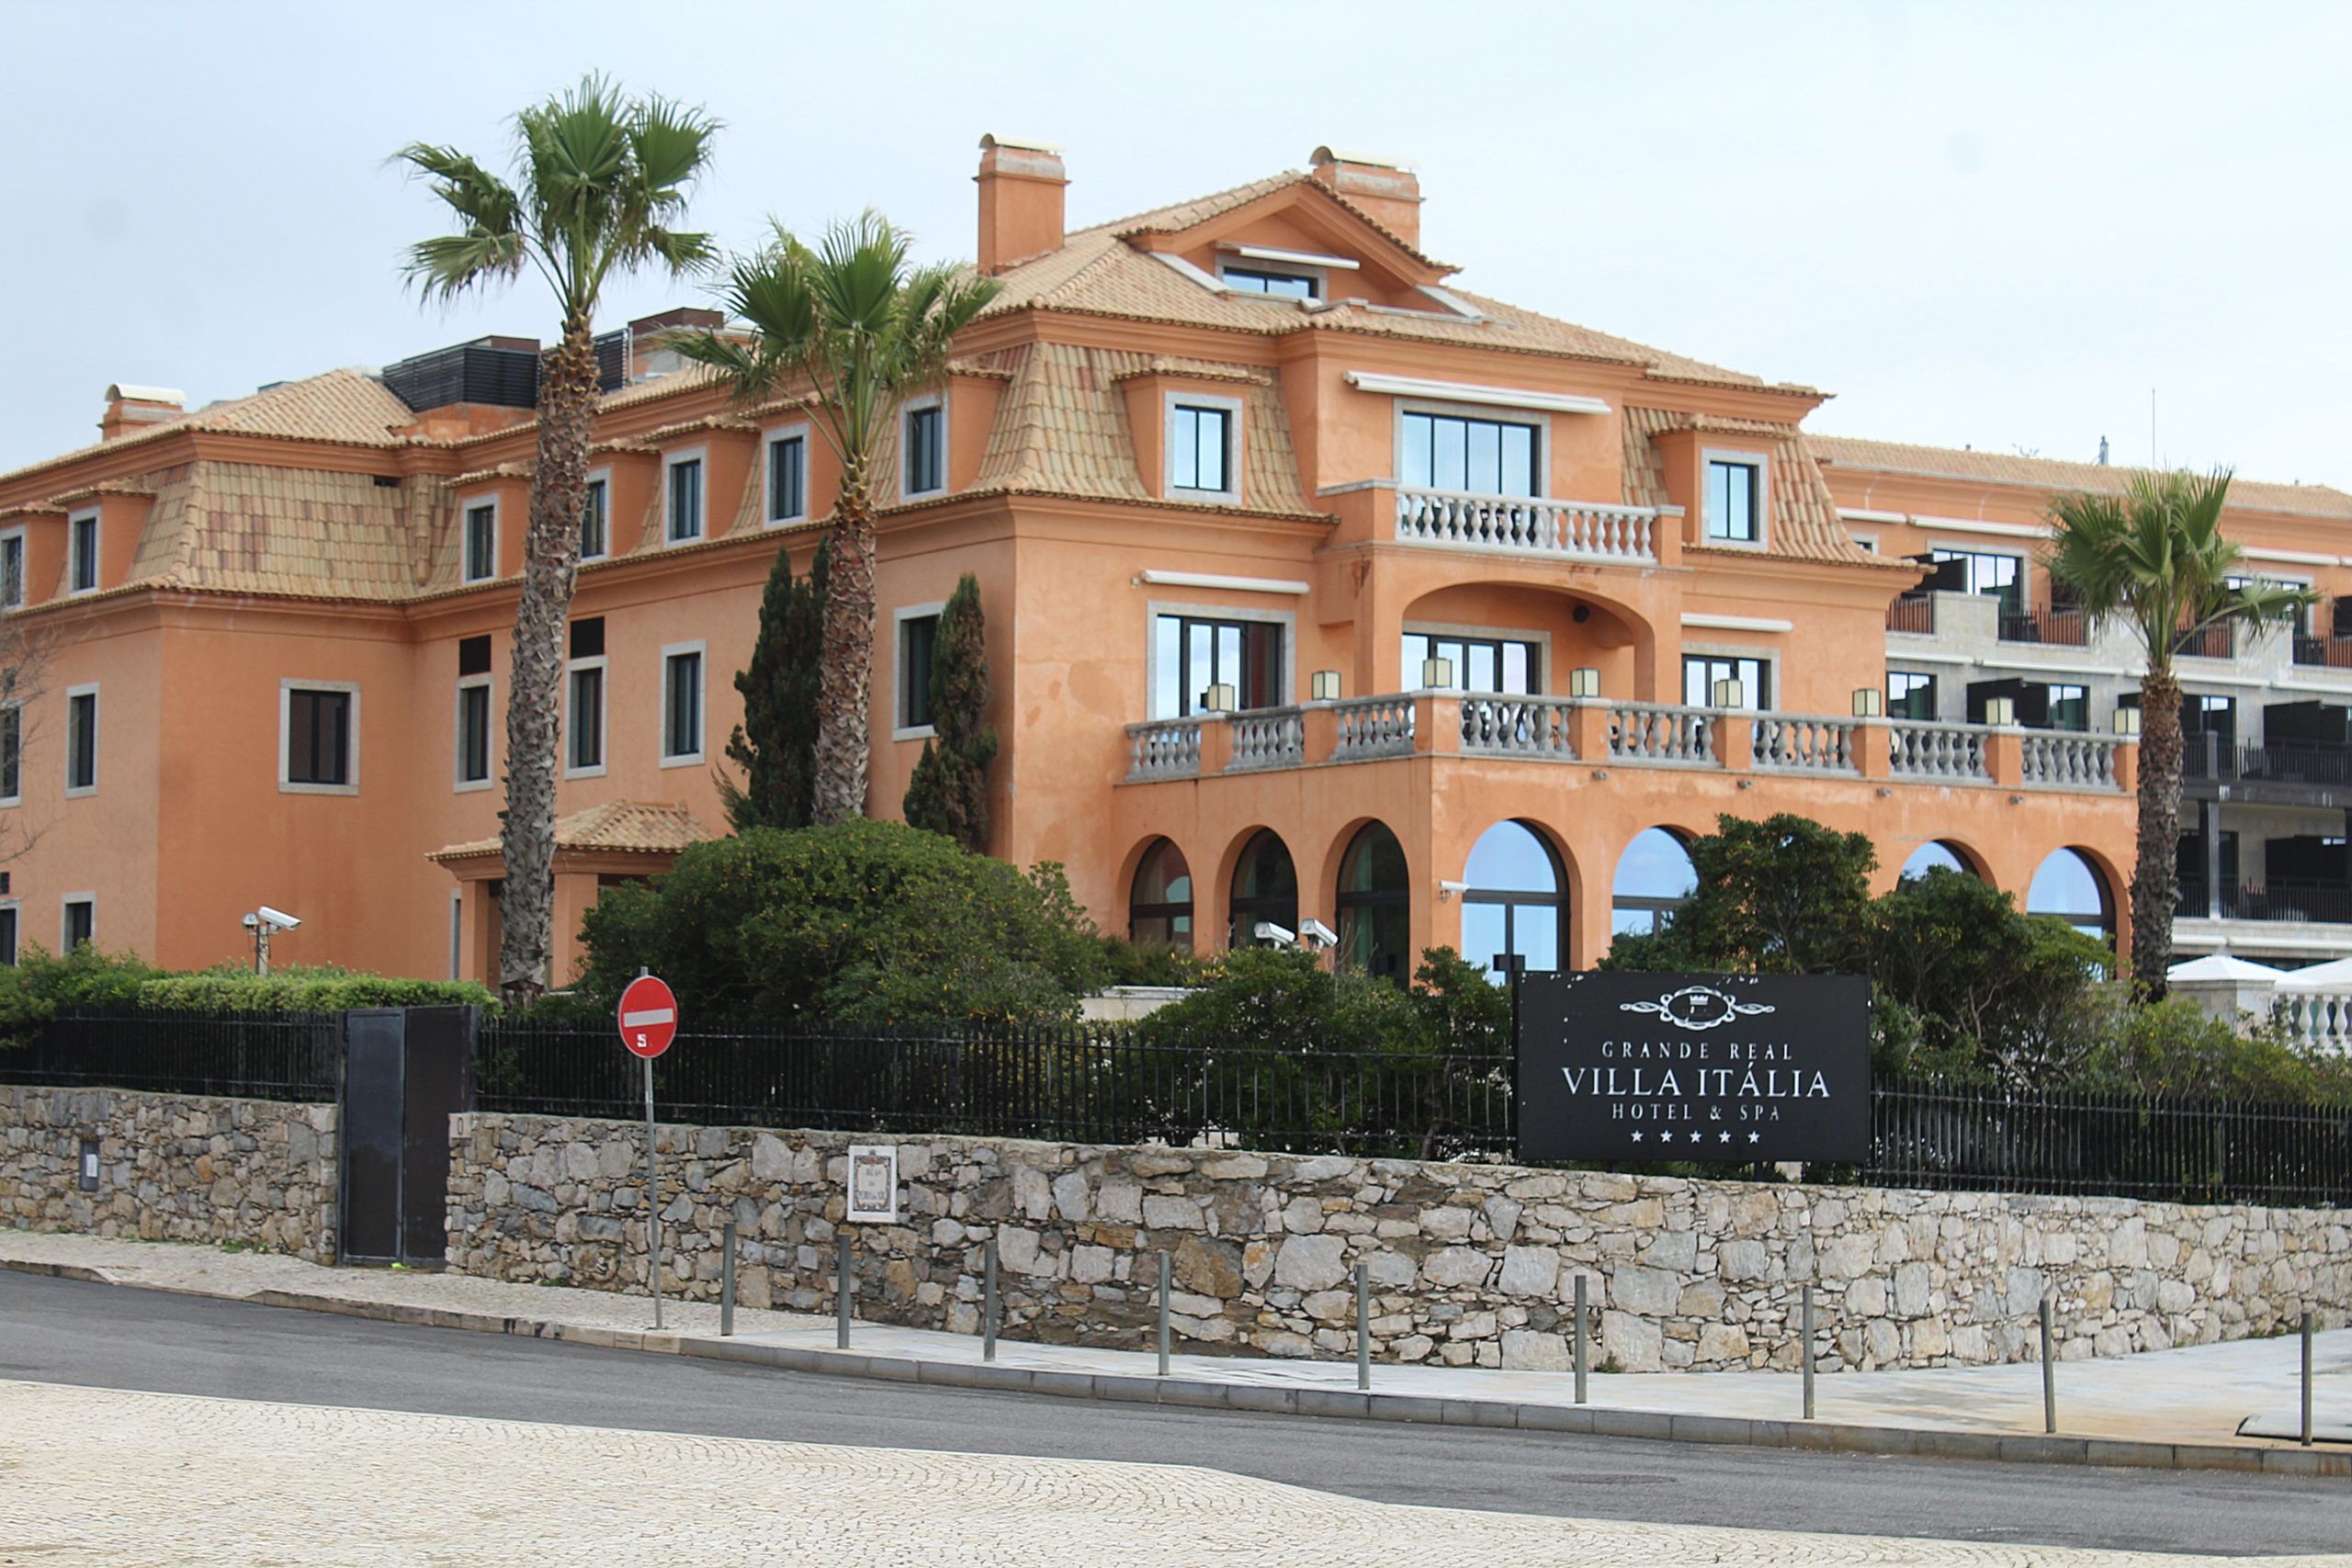 Real Villa Italia Hotel